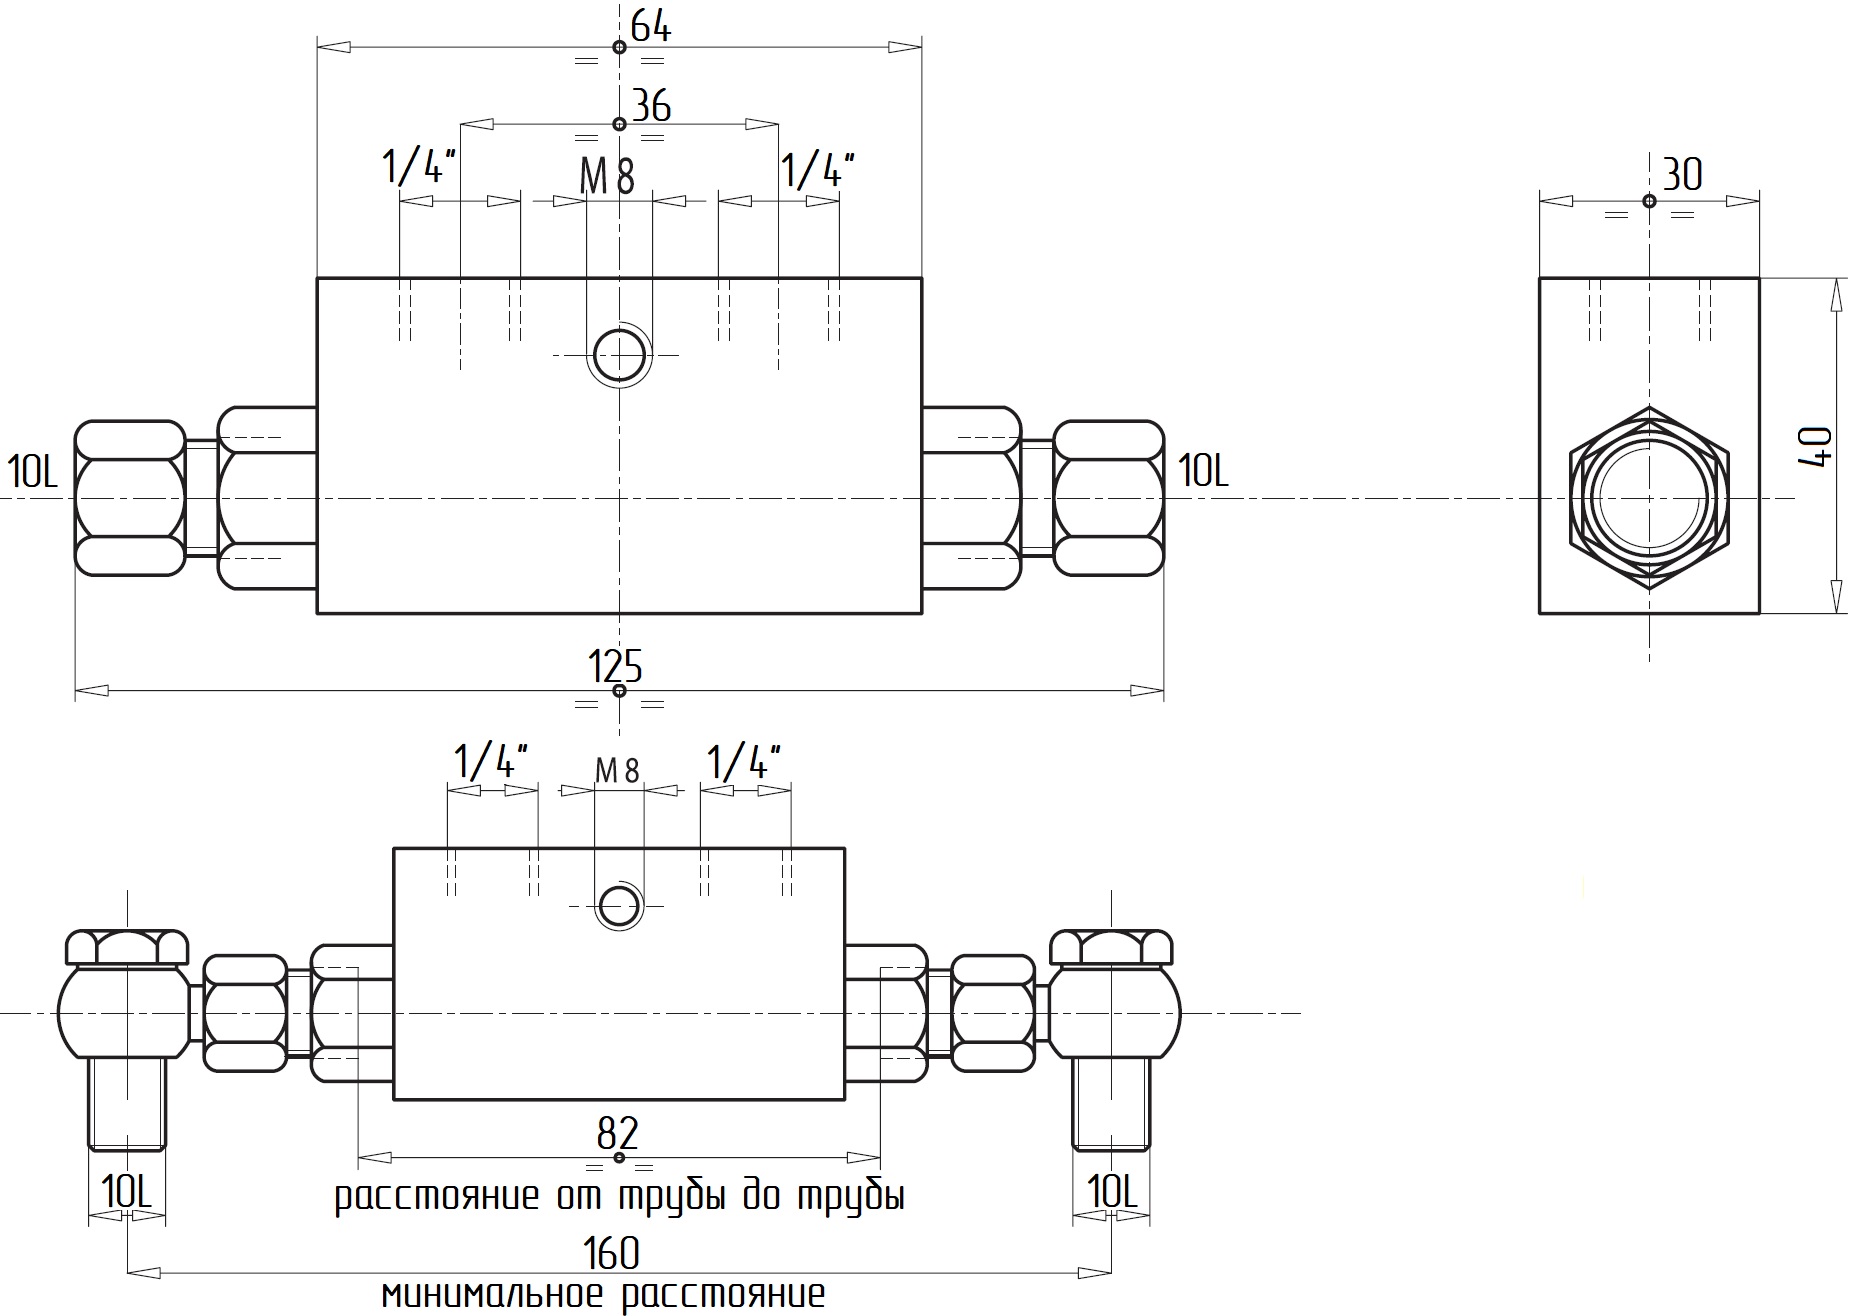 Гидравлическая схема обозначения V0091-VBPDE 1/4 L 2 C.EX.C. - двусторонний гидрозамок